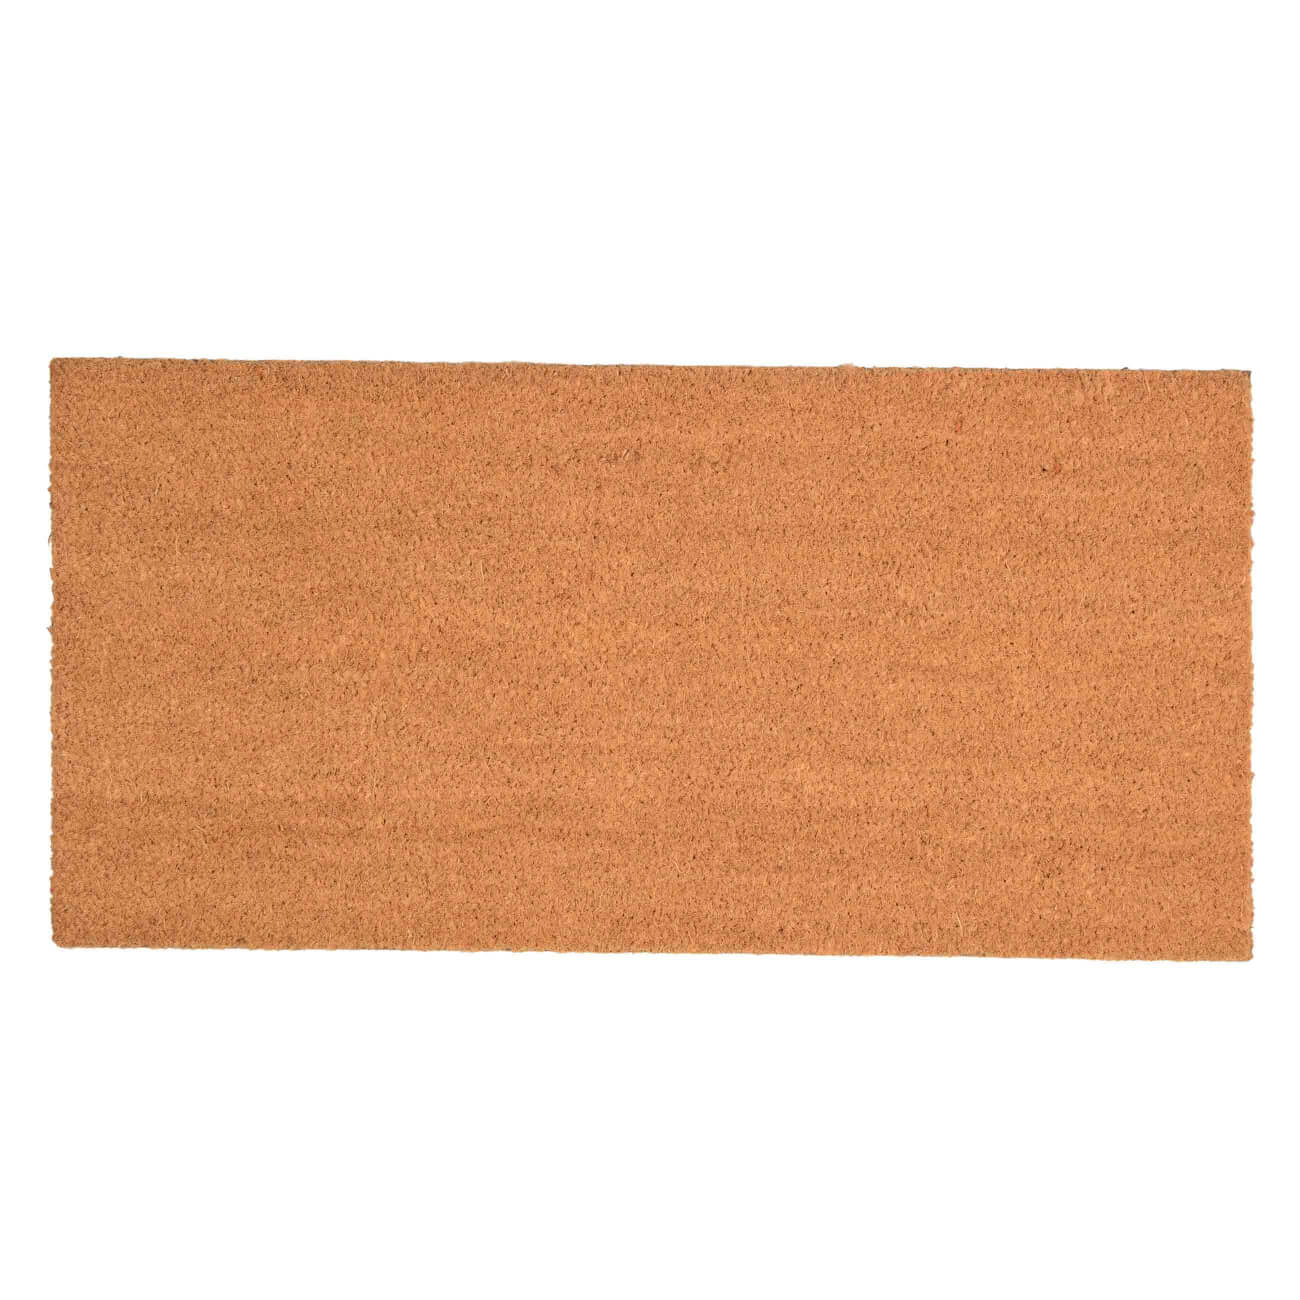 Коврик придверный, 40х80 см, кокос/ПВХ, коричневый, Basic массажный коврик подлокотника ящерица с красной окантовкой 26×15 см